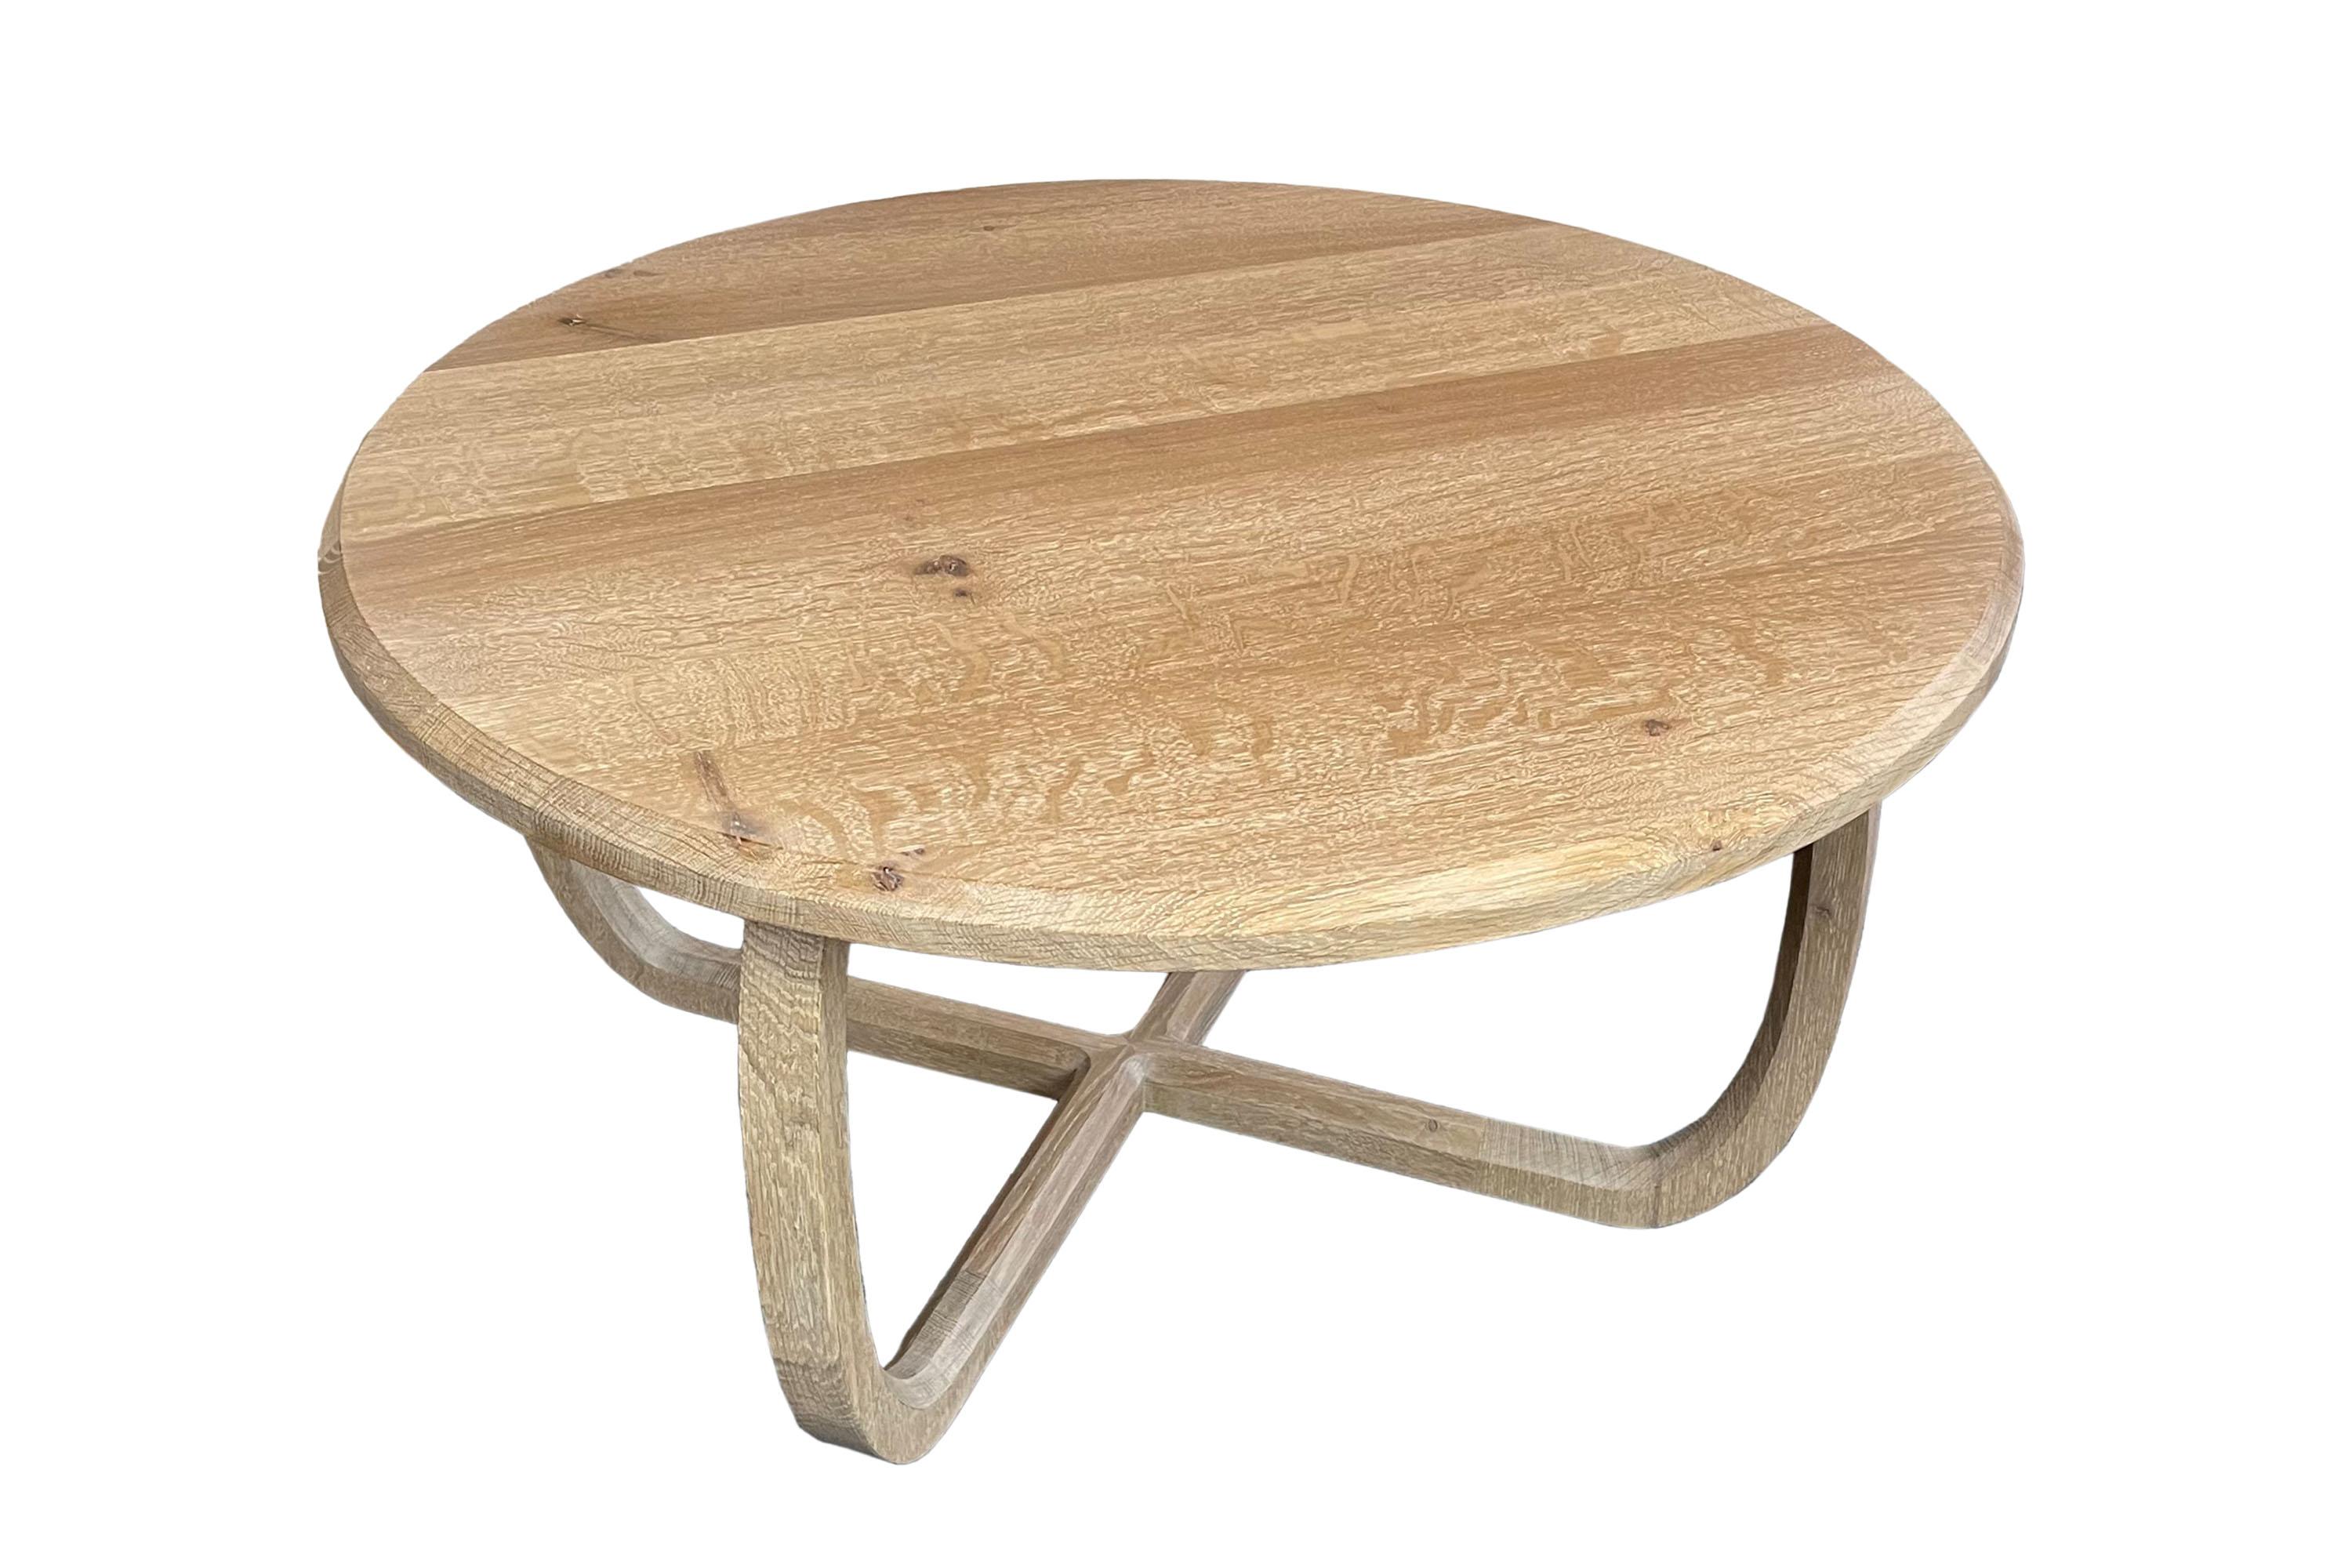 Table basse moderne en chêne avec des pieds délicats. Cette table basse a été fabriquée dans notre atelier de menuiserie. La surface a été traitée avec une huile blanche. 
Sur demande, la table est disponible en différents bois, dimensions et